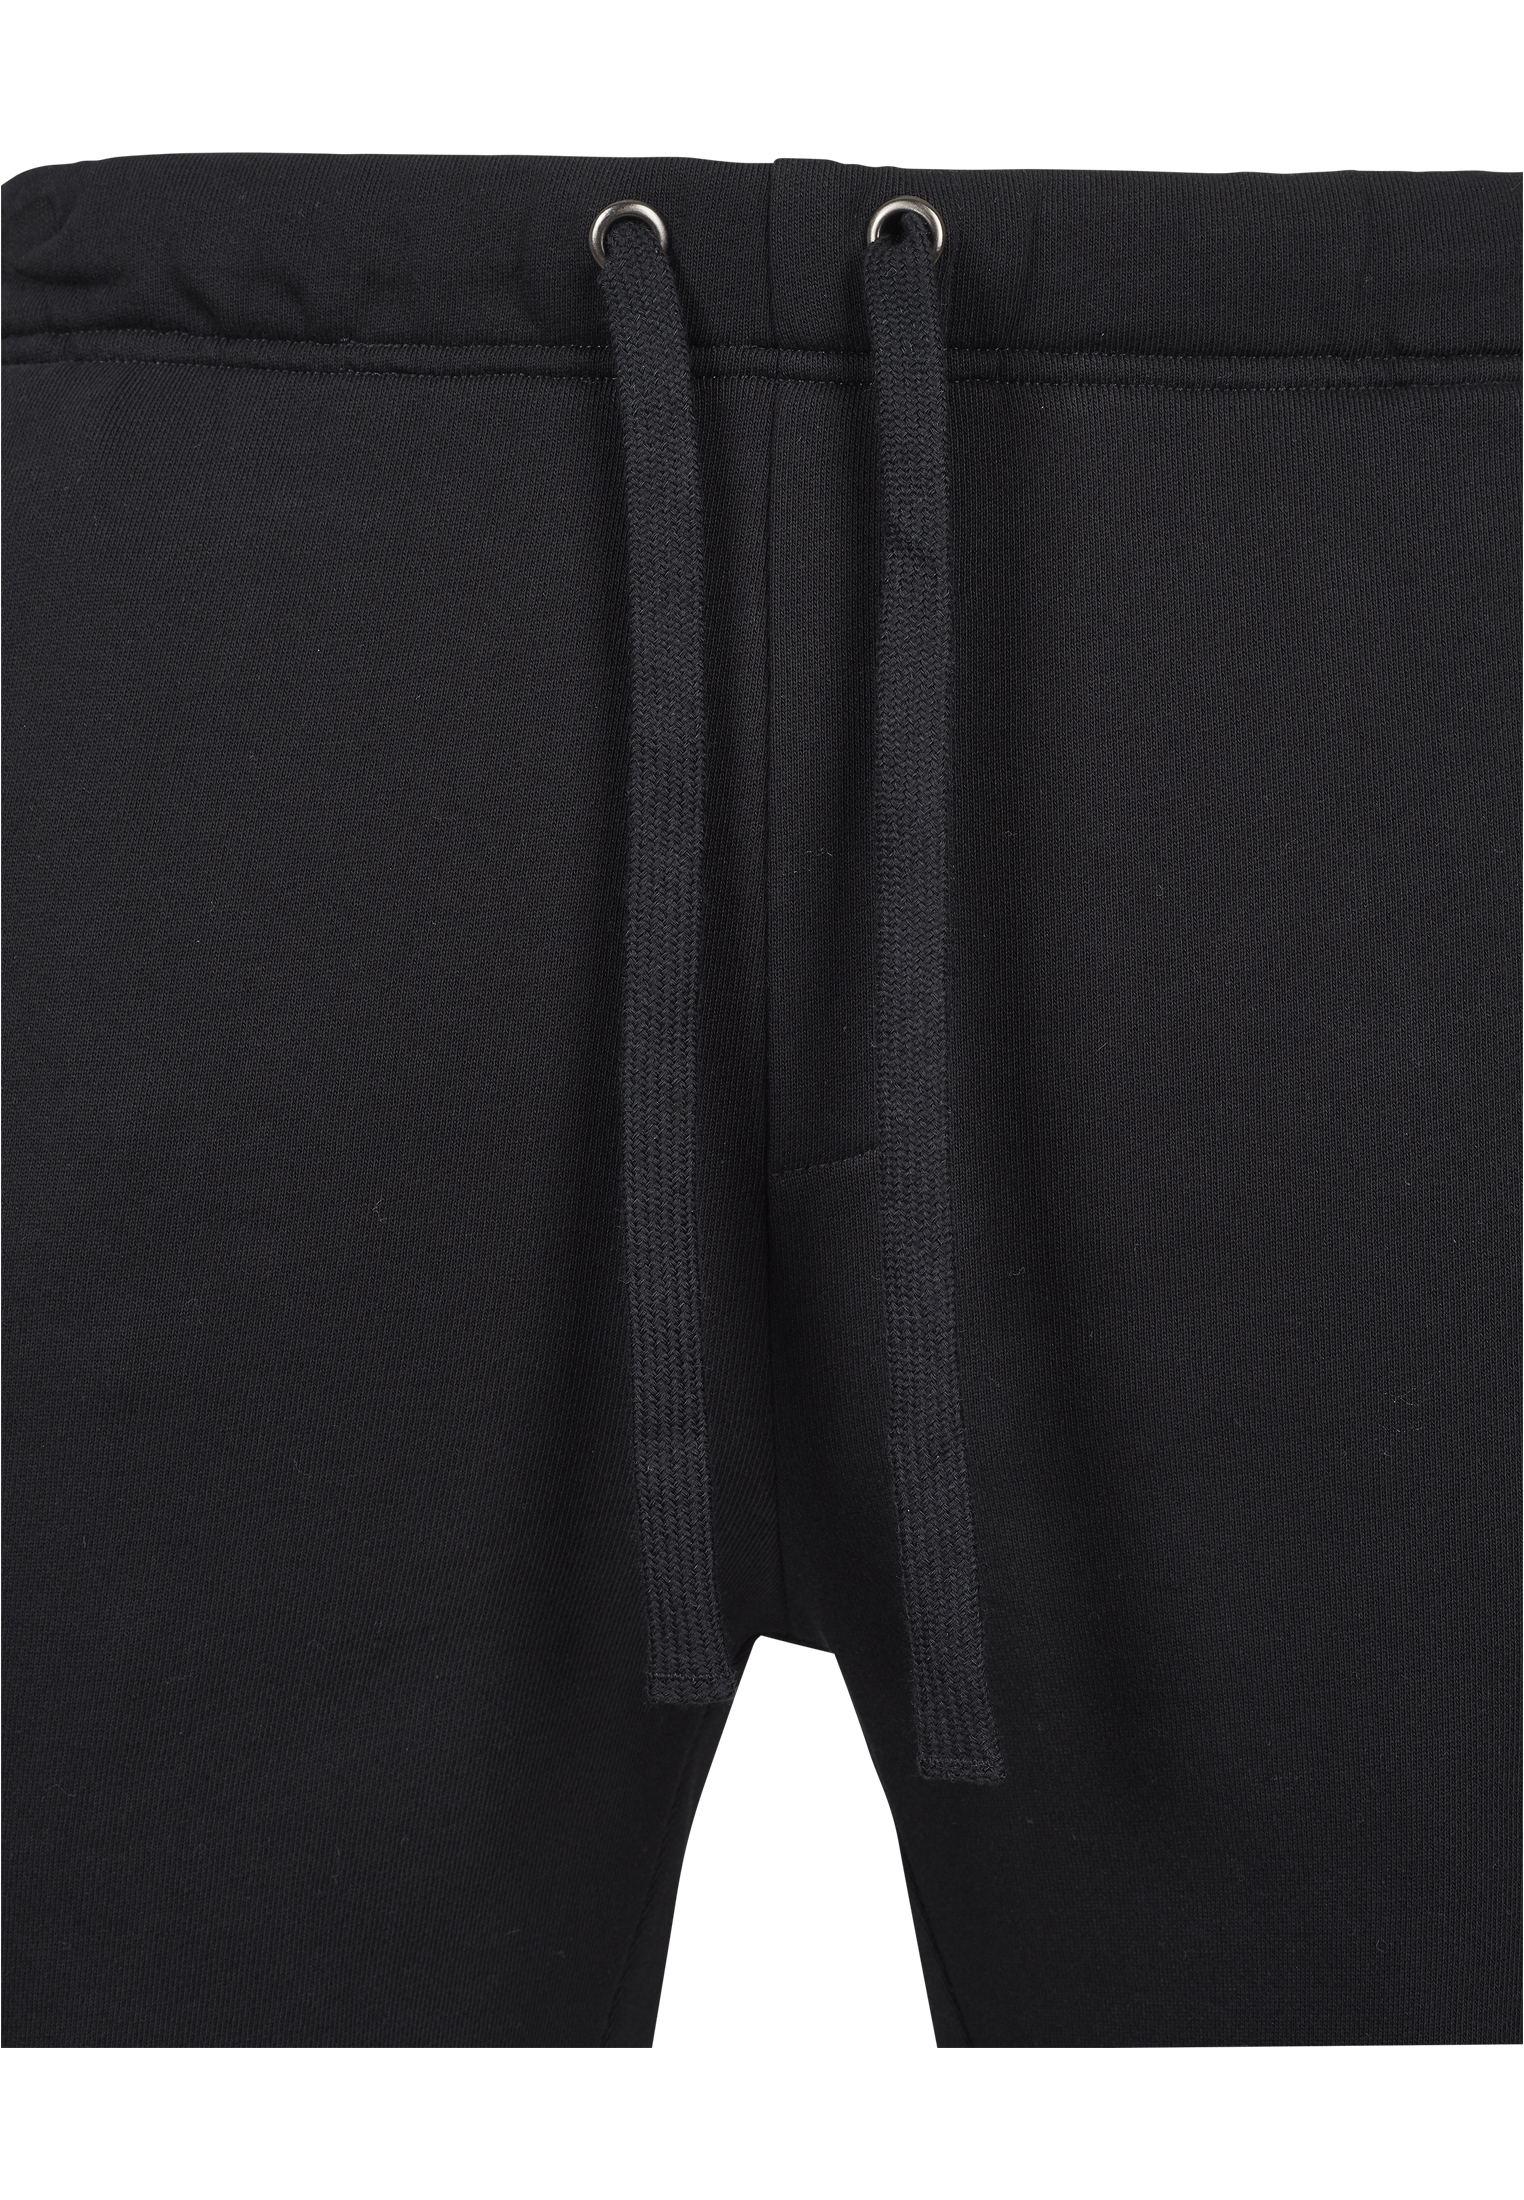 Kurze Hosen Basic Sweatshorts in Farbe black